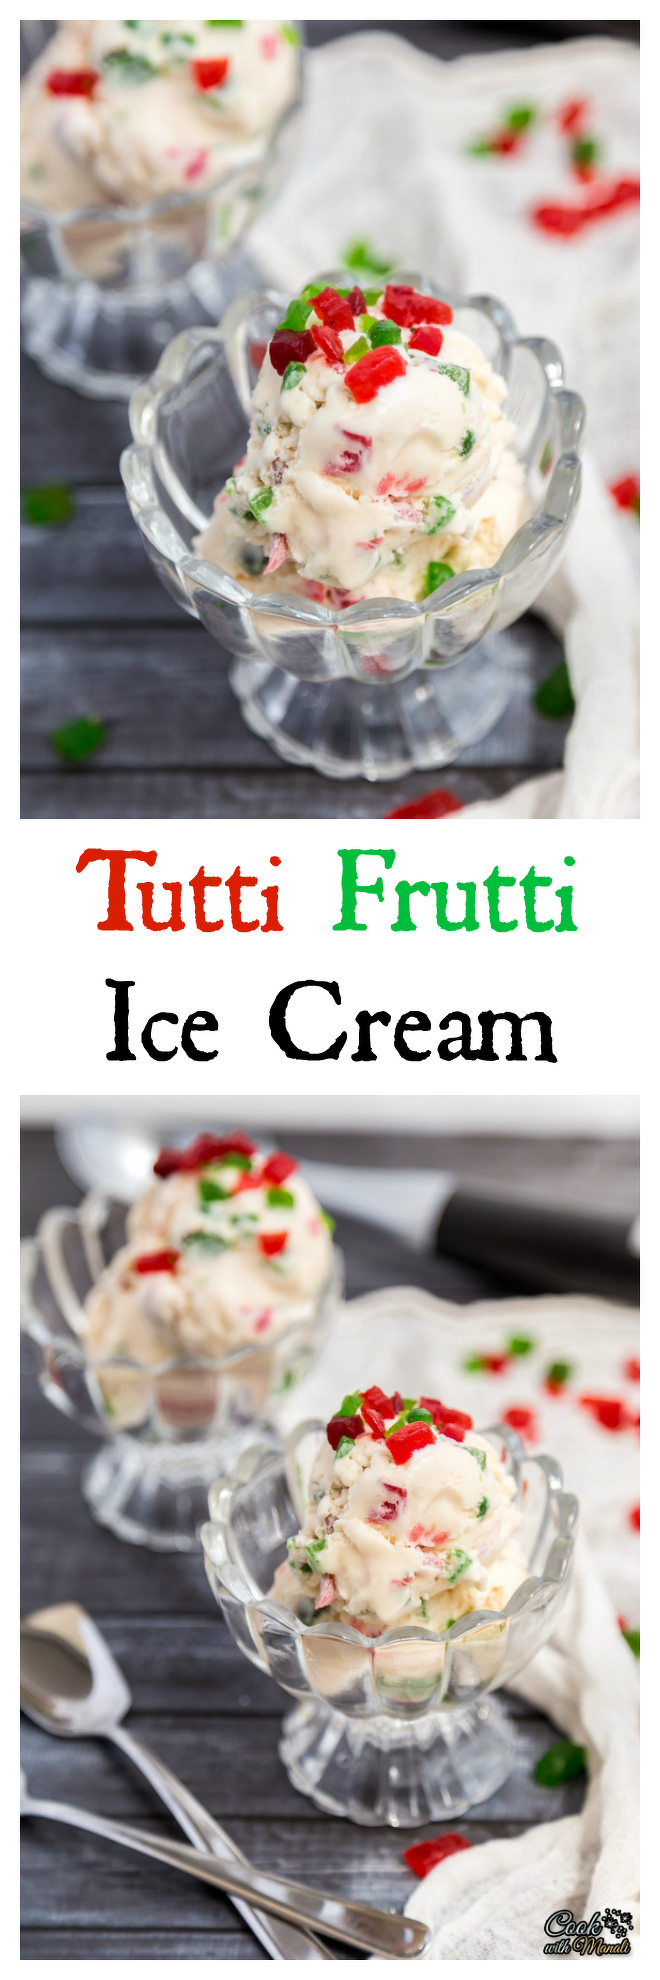 Tutti Frutti Ice Cream Collage-nocwm